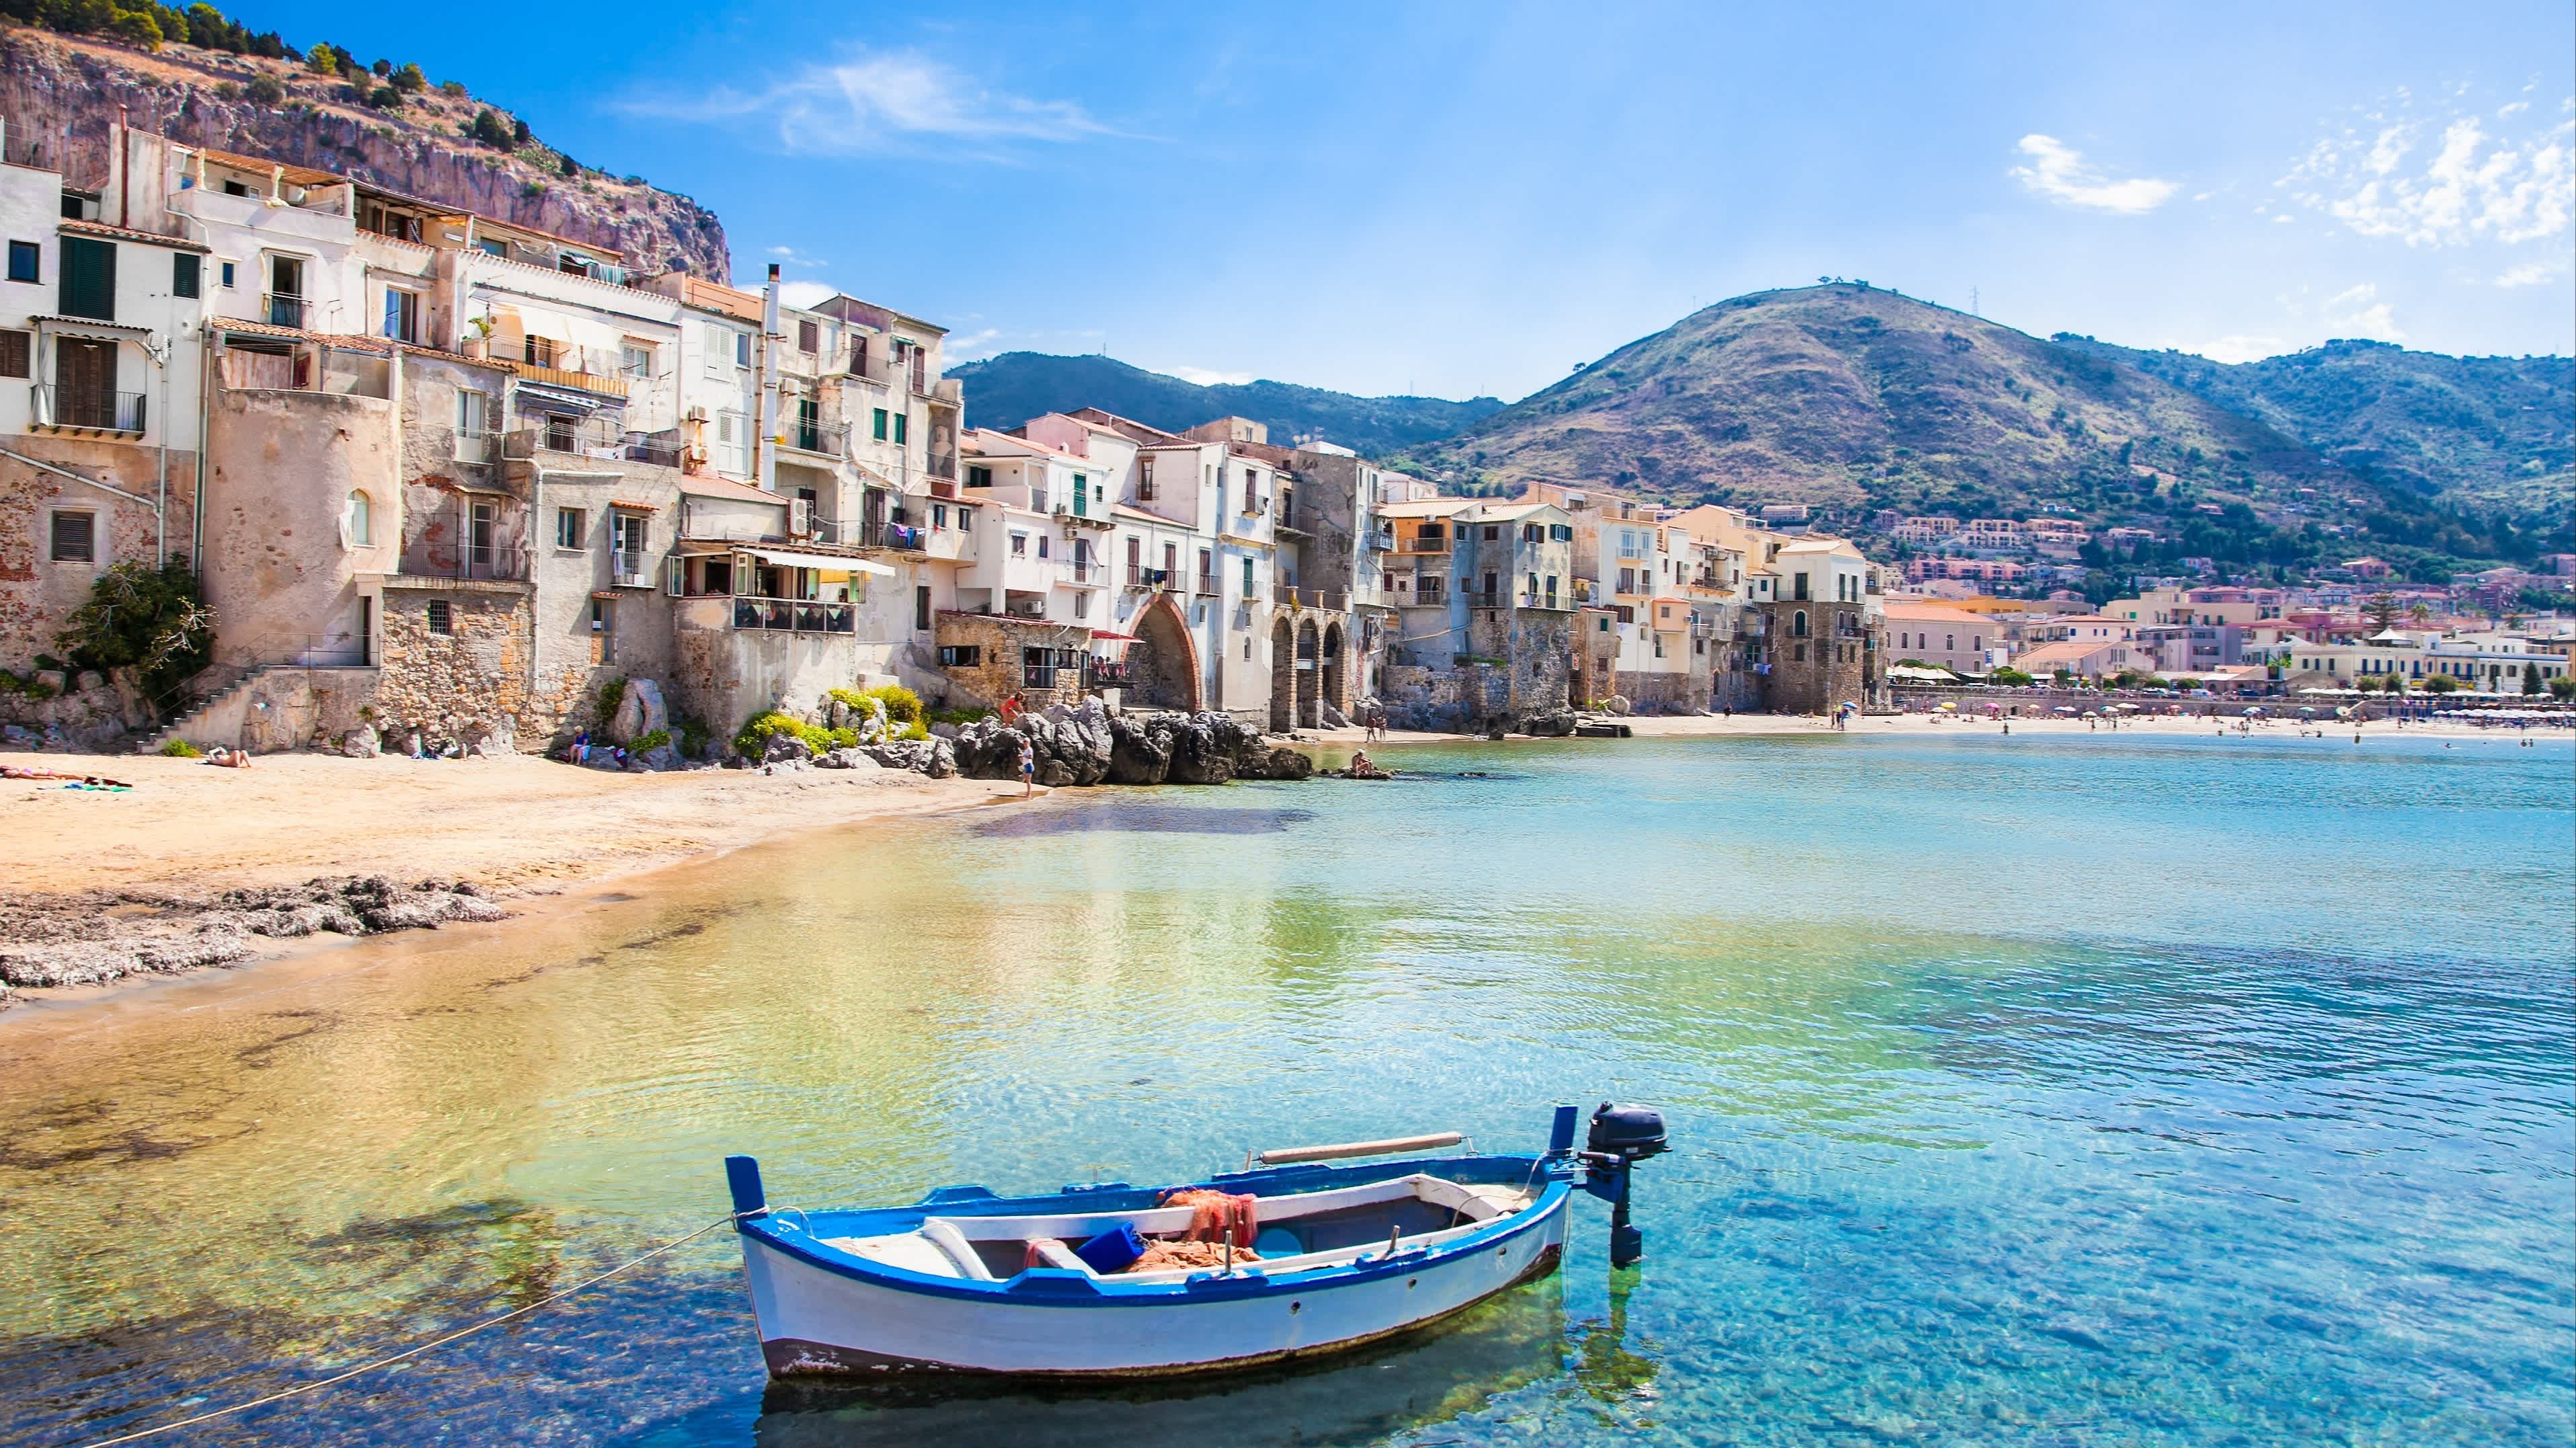 Schöner alter Hafen mit hölzernem Fischerboot in Cefalu, Sizilien, Italien mit Häusern, Klippen und Bergen im Bild bei Sonnenschein.

